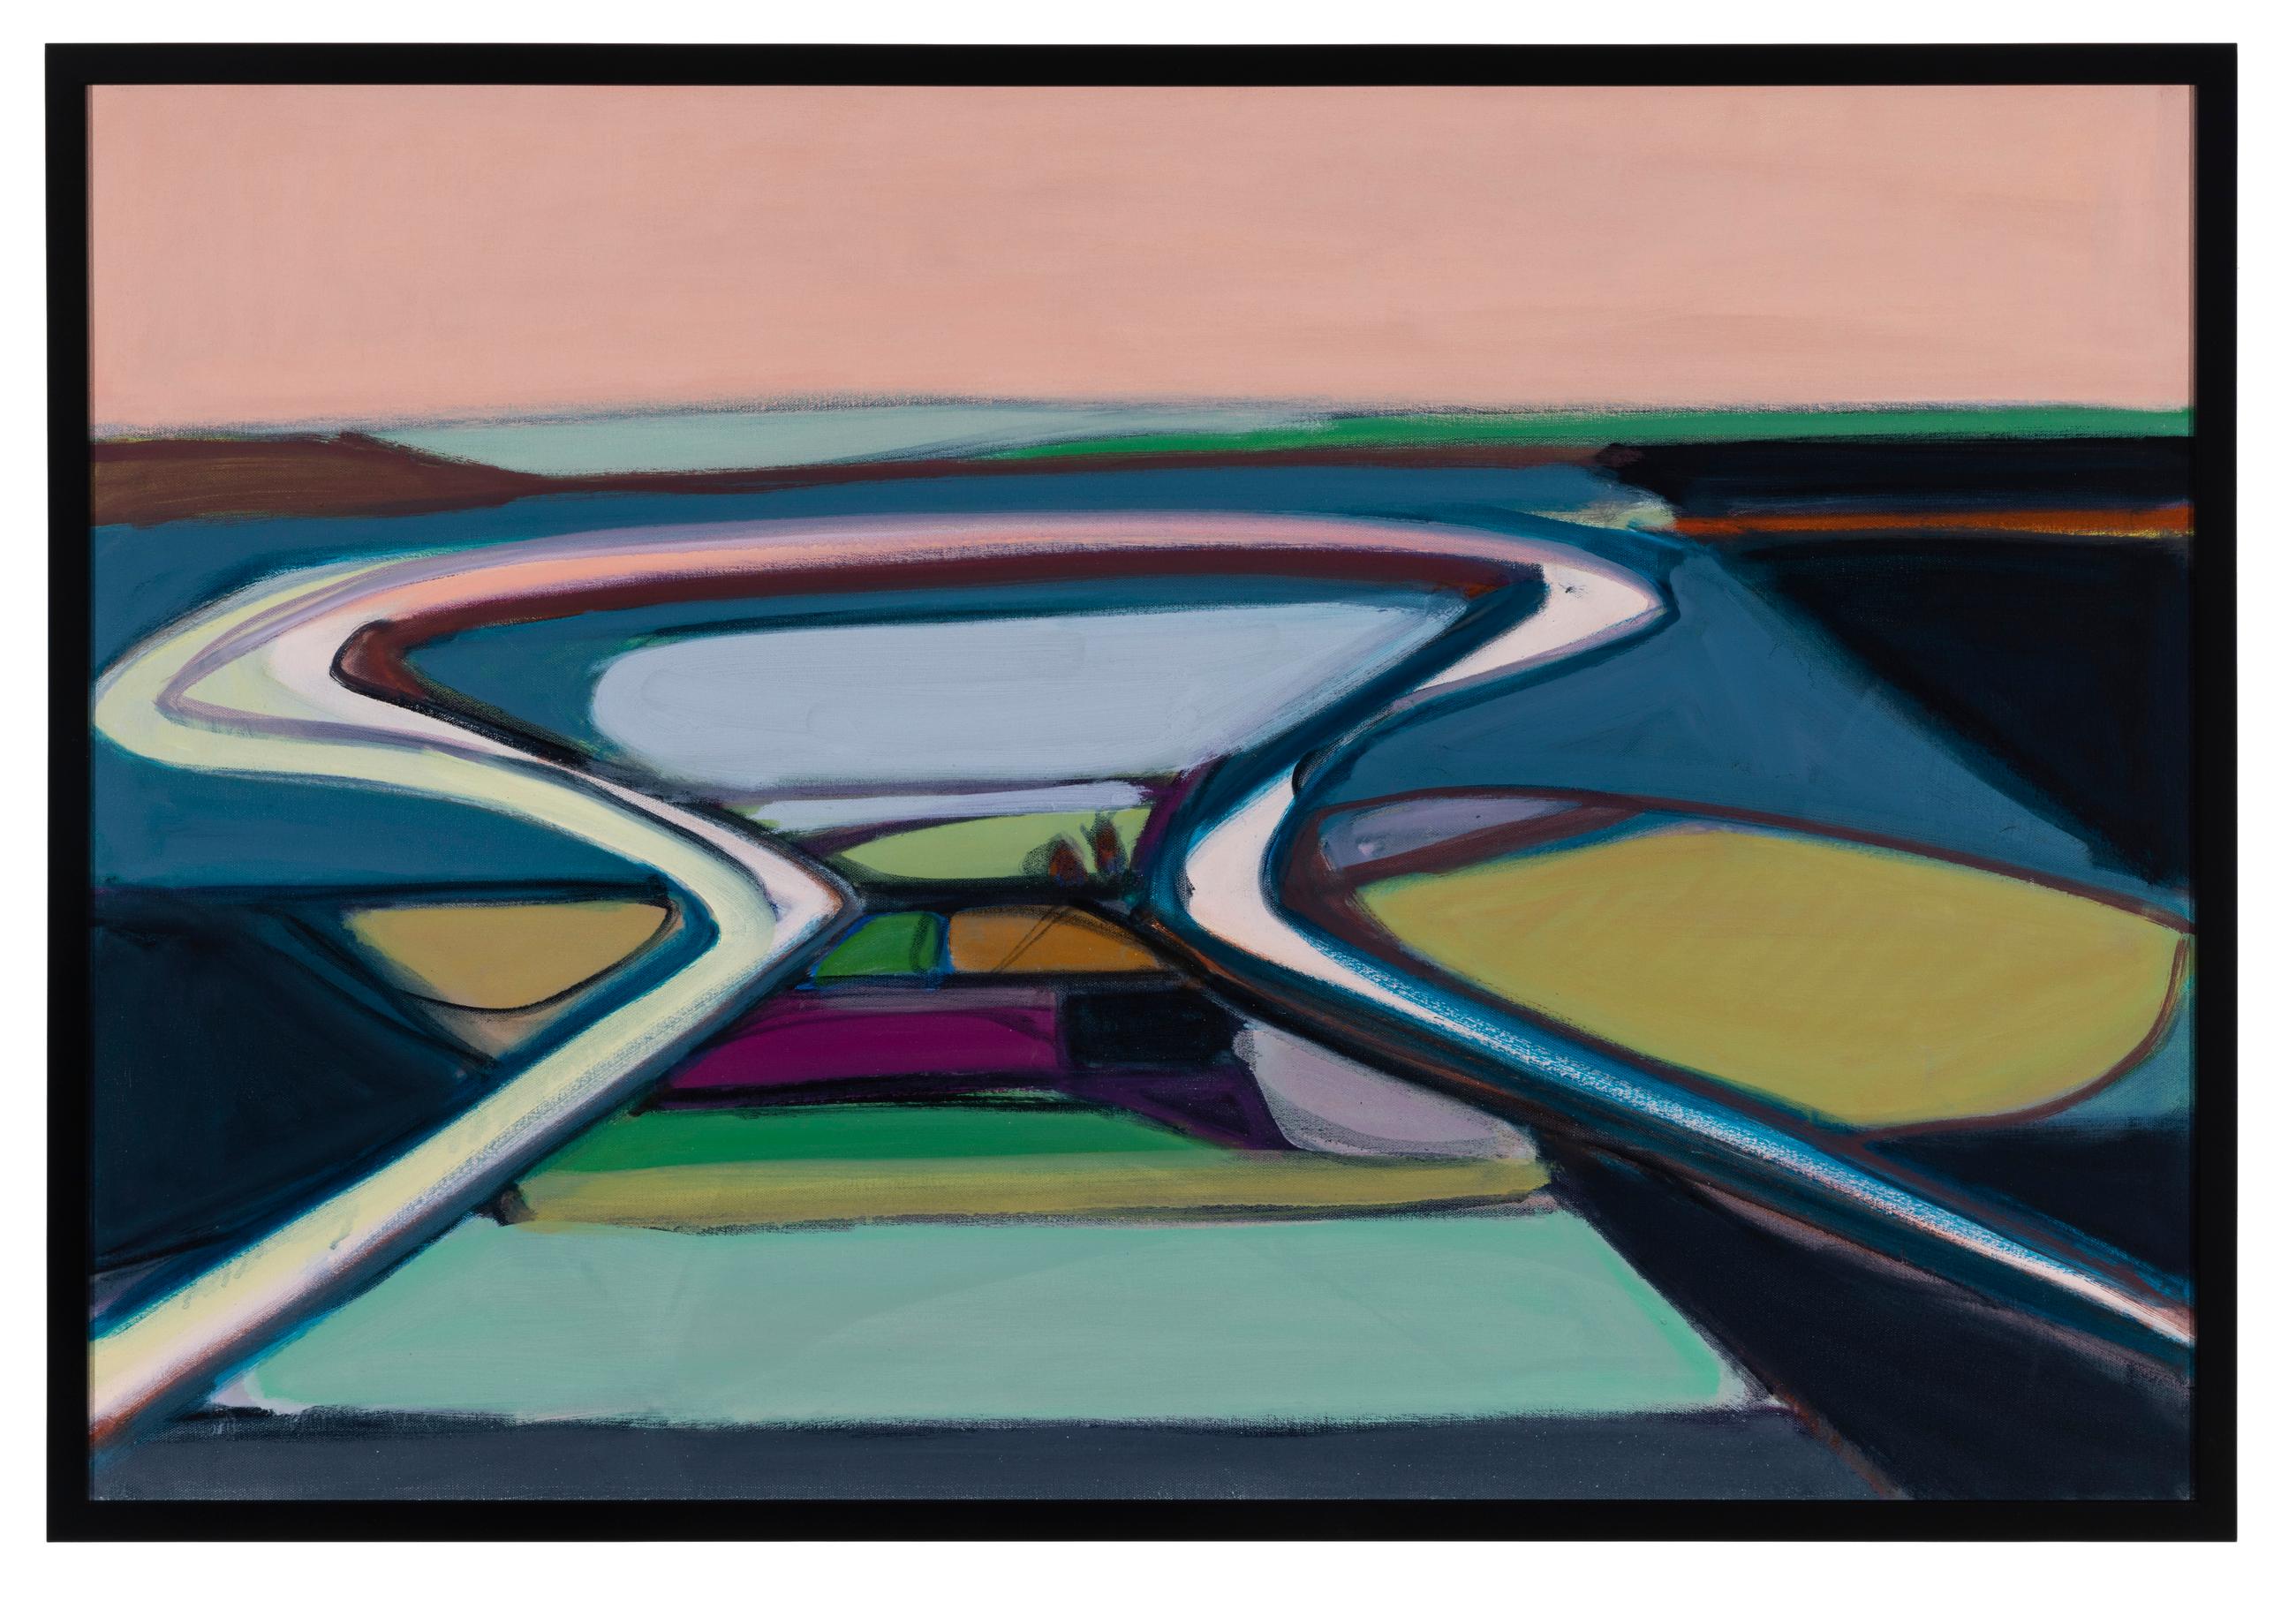 Abstract Painting Karen Matheis - "Evening Meander" - Paysage, milieu du siècle, vert, bleu, violet, rose